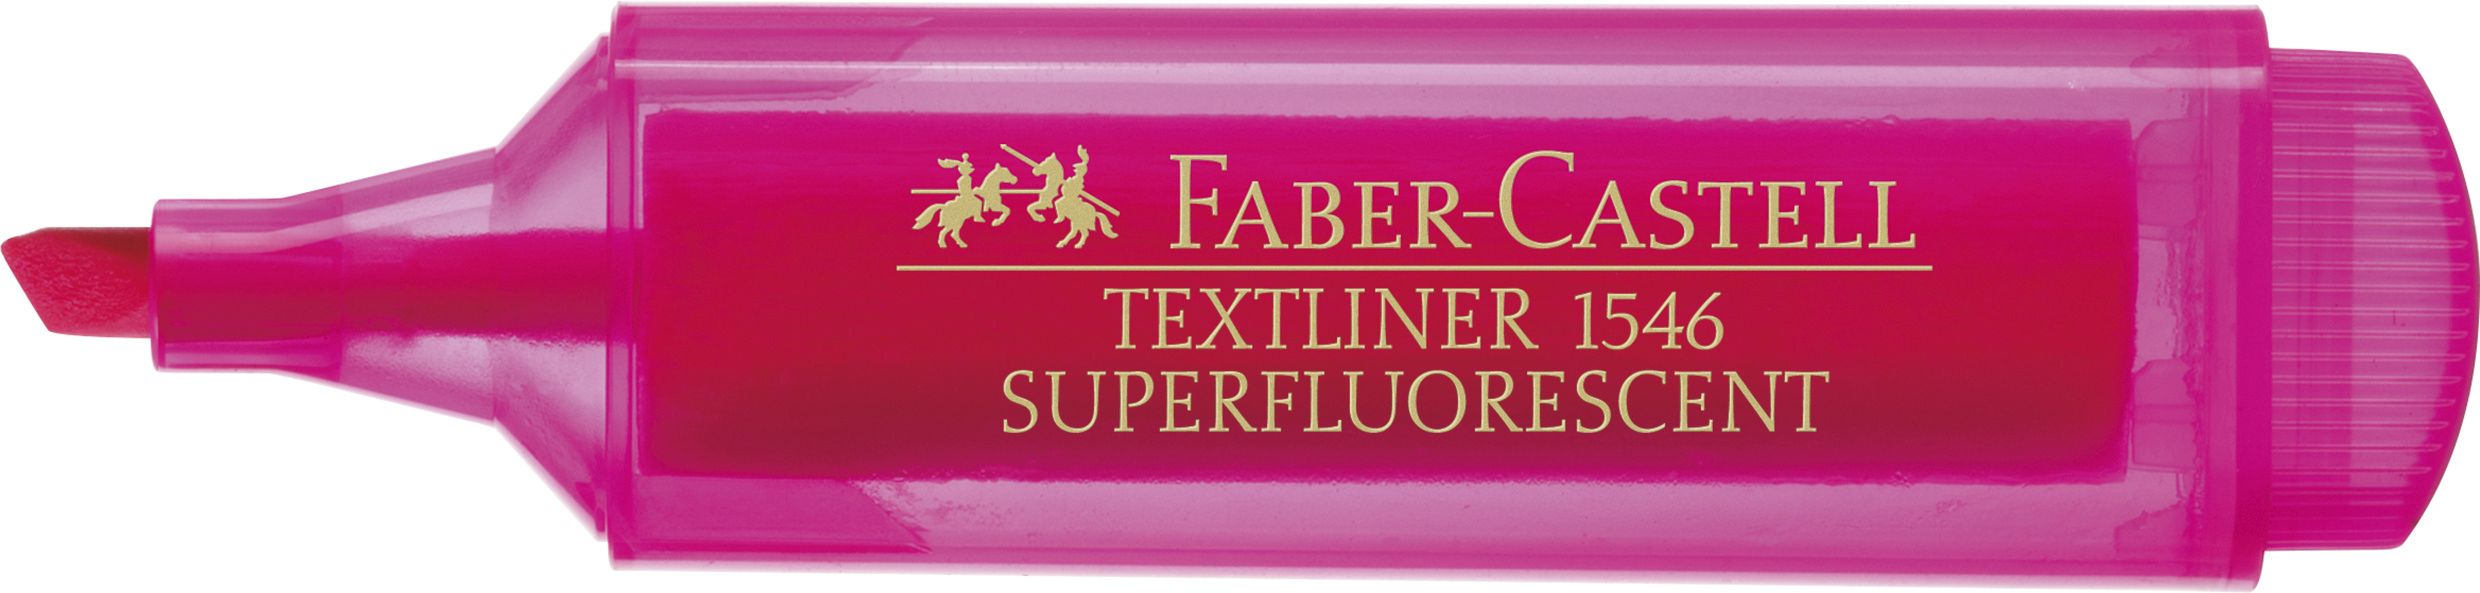 TEXTMARKER ROZ SUPERFLUORESCENT 1546 FABER-CASTELL